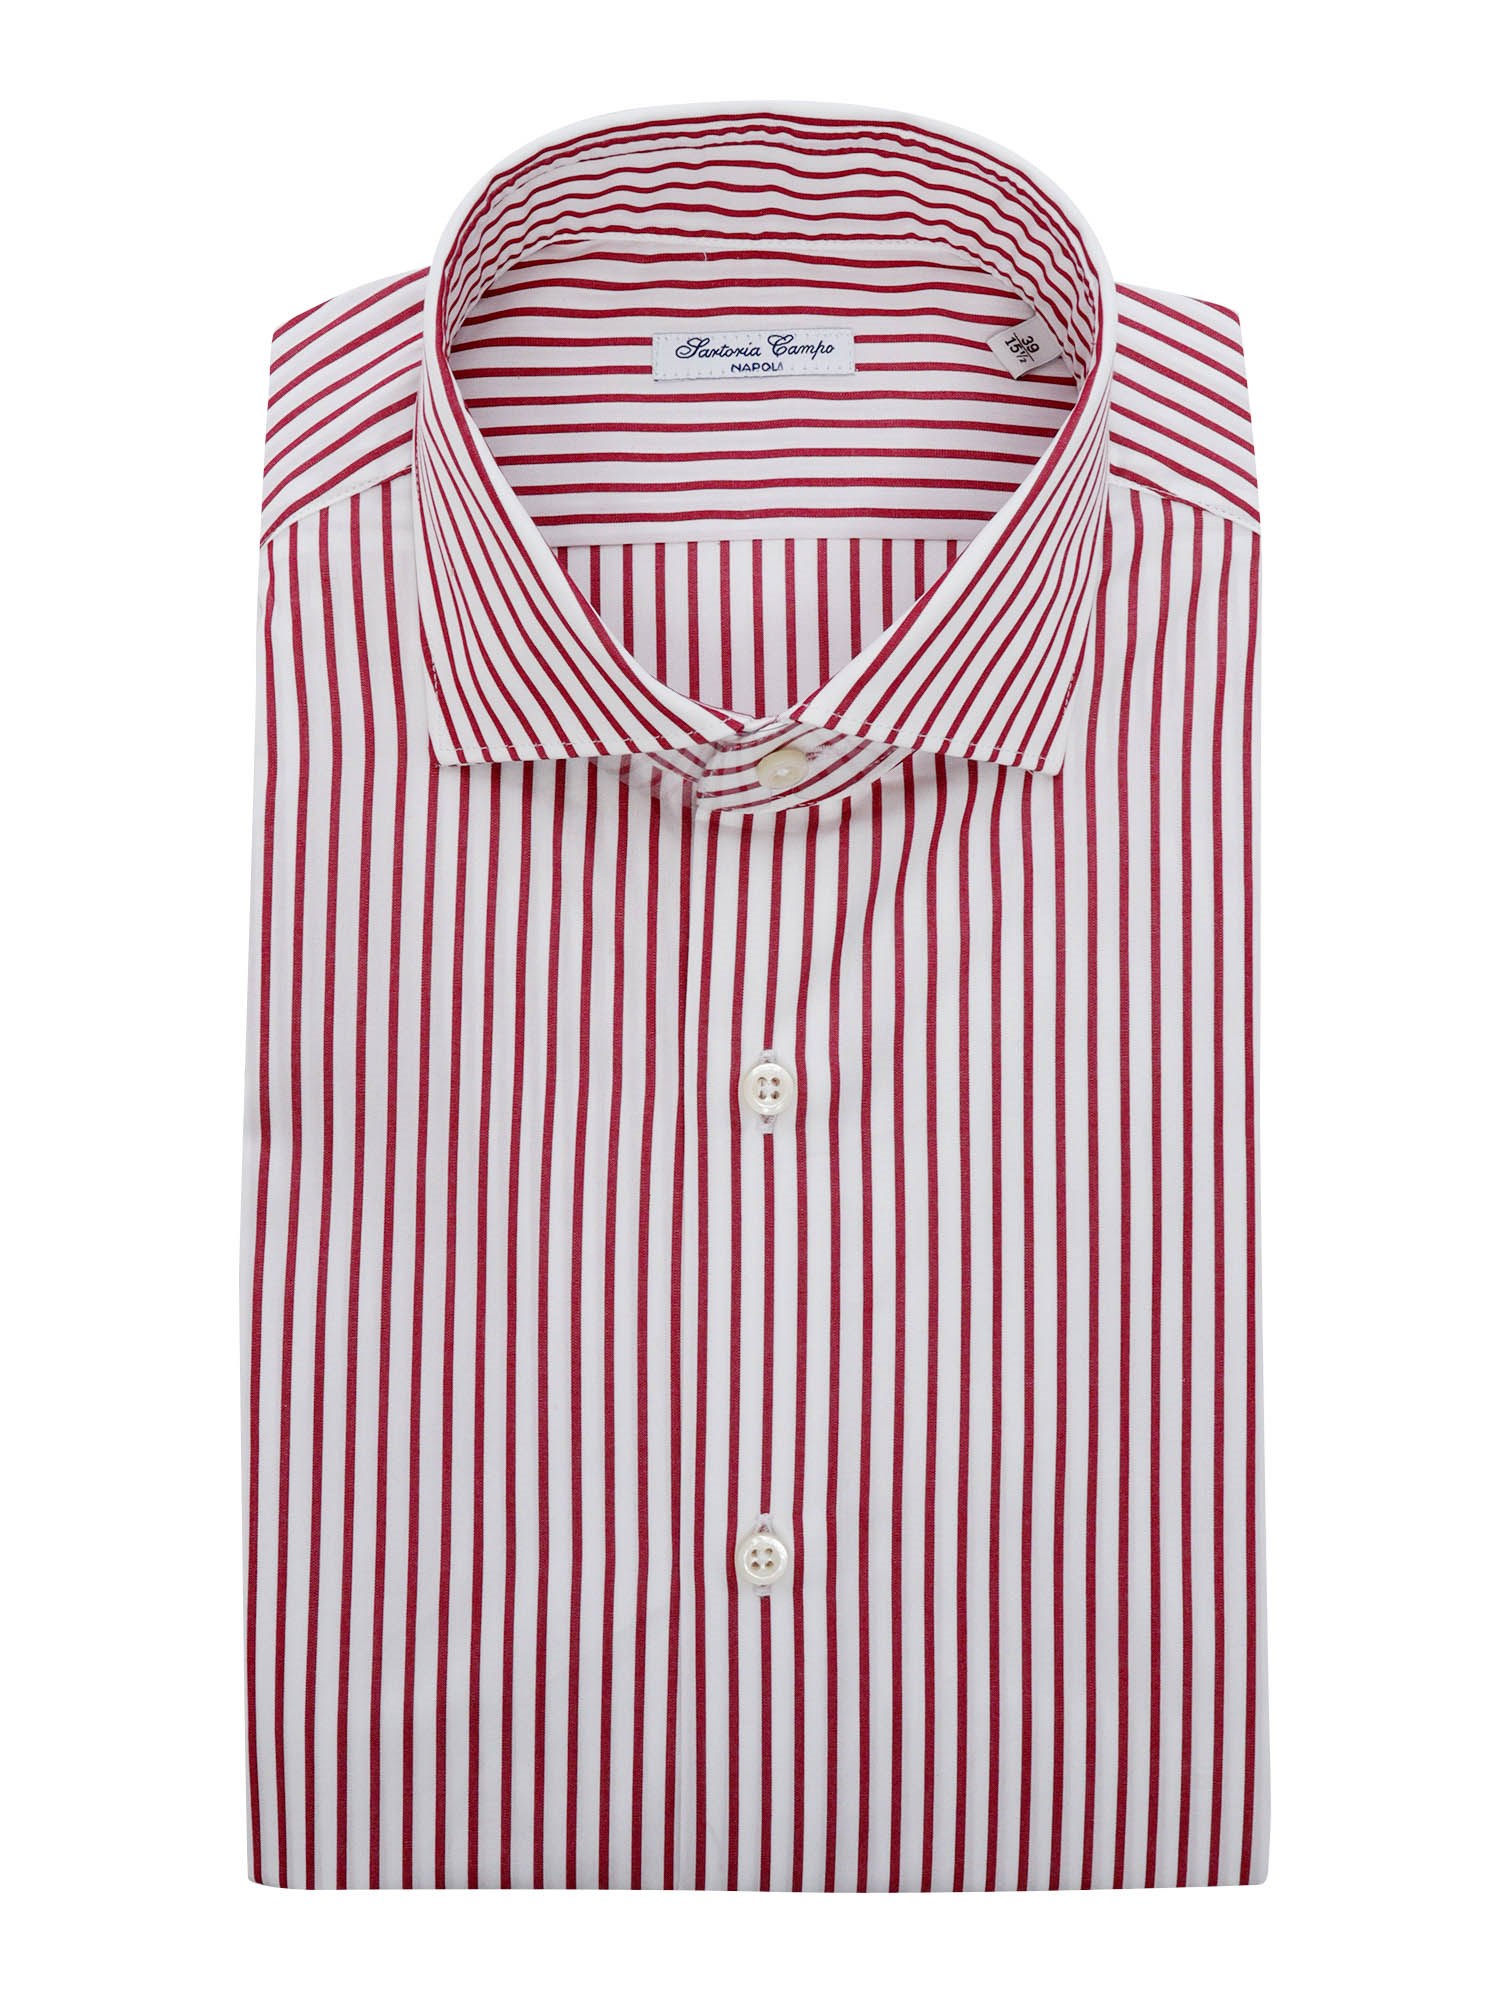 Sartoria Del Campo-sonrisa Red And White Striped Shirt